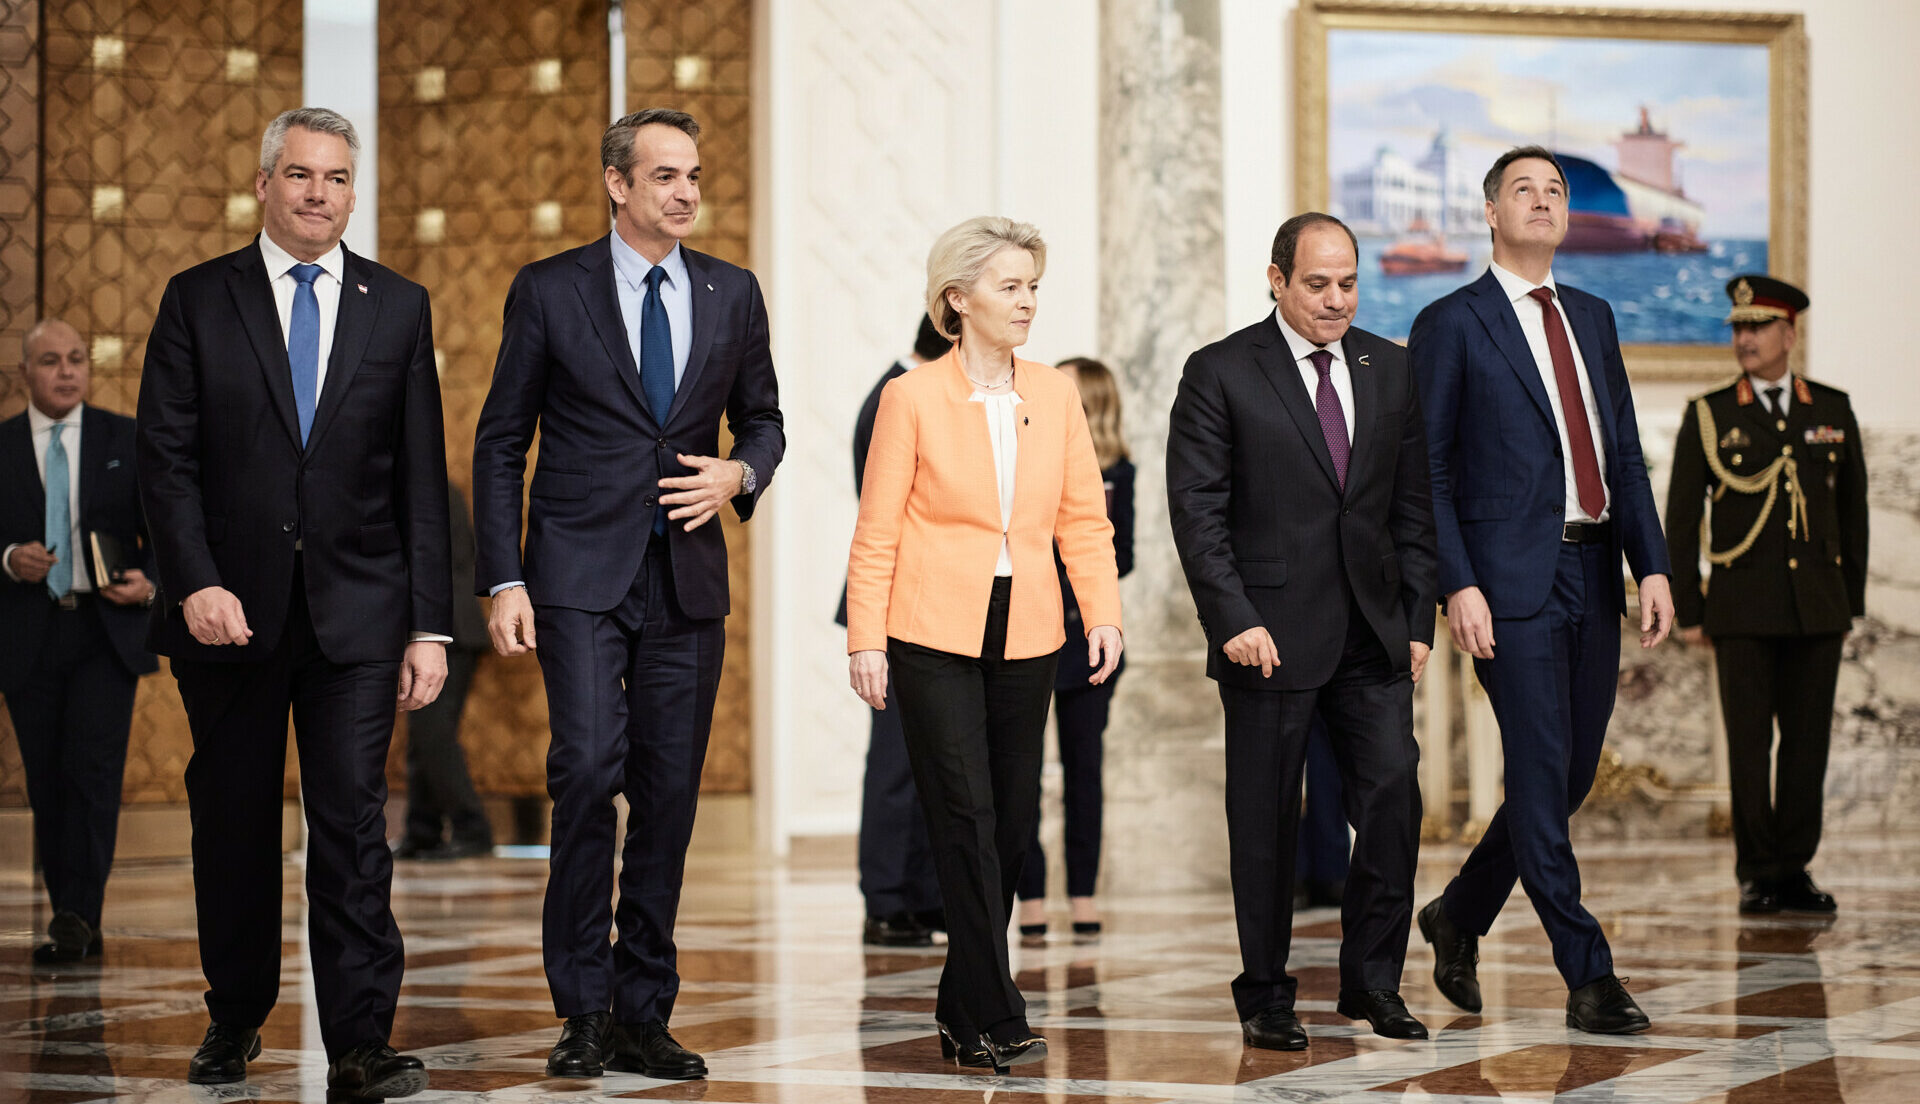 Επίσκεψη του Πρωθυπουργού Κυριάκου Μητσοτάκη στο Κάιρο από κοινού με την Πρόεδρο της Κομισιόν Ούρσουλα φον ντερ Λάιεν, τους πρωθυπουργούς της Ιταλίας Τζιόρτζια Μελόνι, του Βελγίου Αλεξάντερ ντε Κρο και τον καγκελάριο της Αυστρίας Καρλ Νεχάμερ © ΔΗΜΗΤΡΗΣ ΠΑΠΑΜΗΤΣΟΣ/ΓΡΑΦΕΙΟ ΤΥΠΟΥ ΠΡΩΘΥΠΟΥΡΓΟΥ/EUROKINISSI